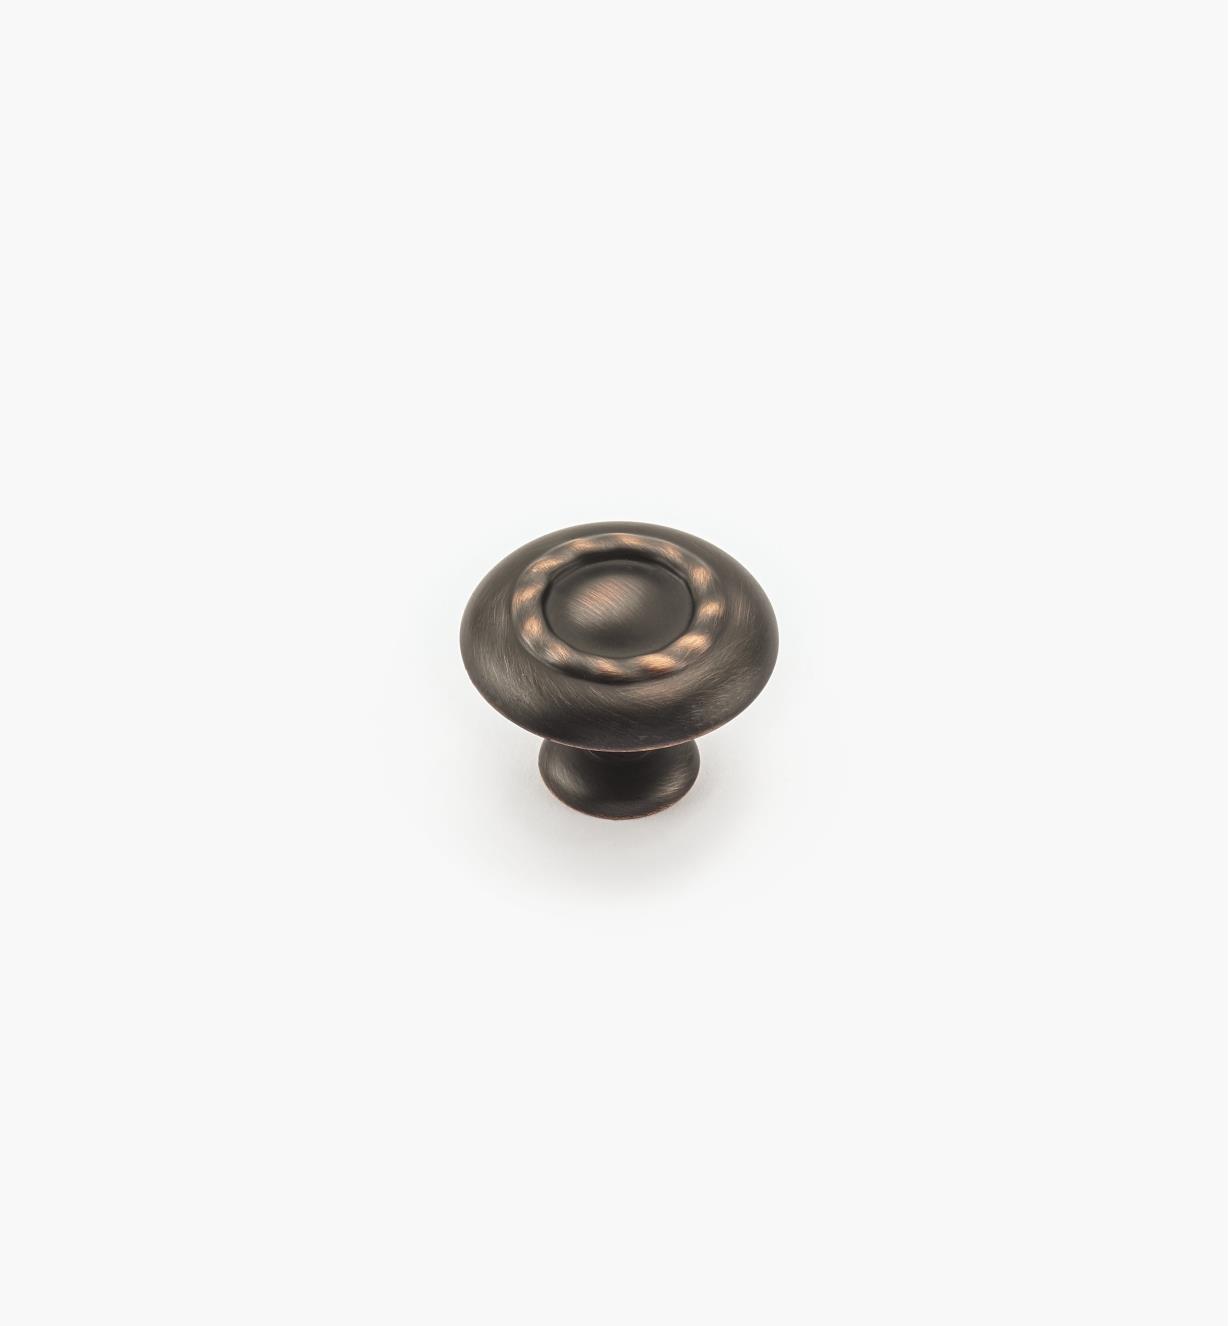 02A1070 - Bouton à motif cordé de 1 3/4 po, série Inspirations, fini bronze huilé